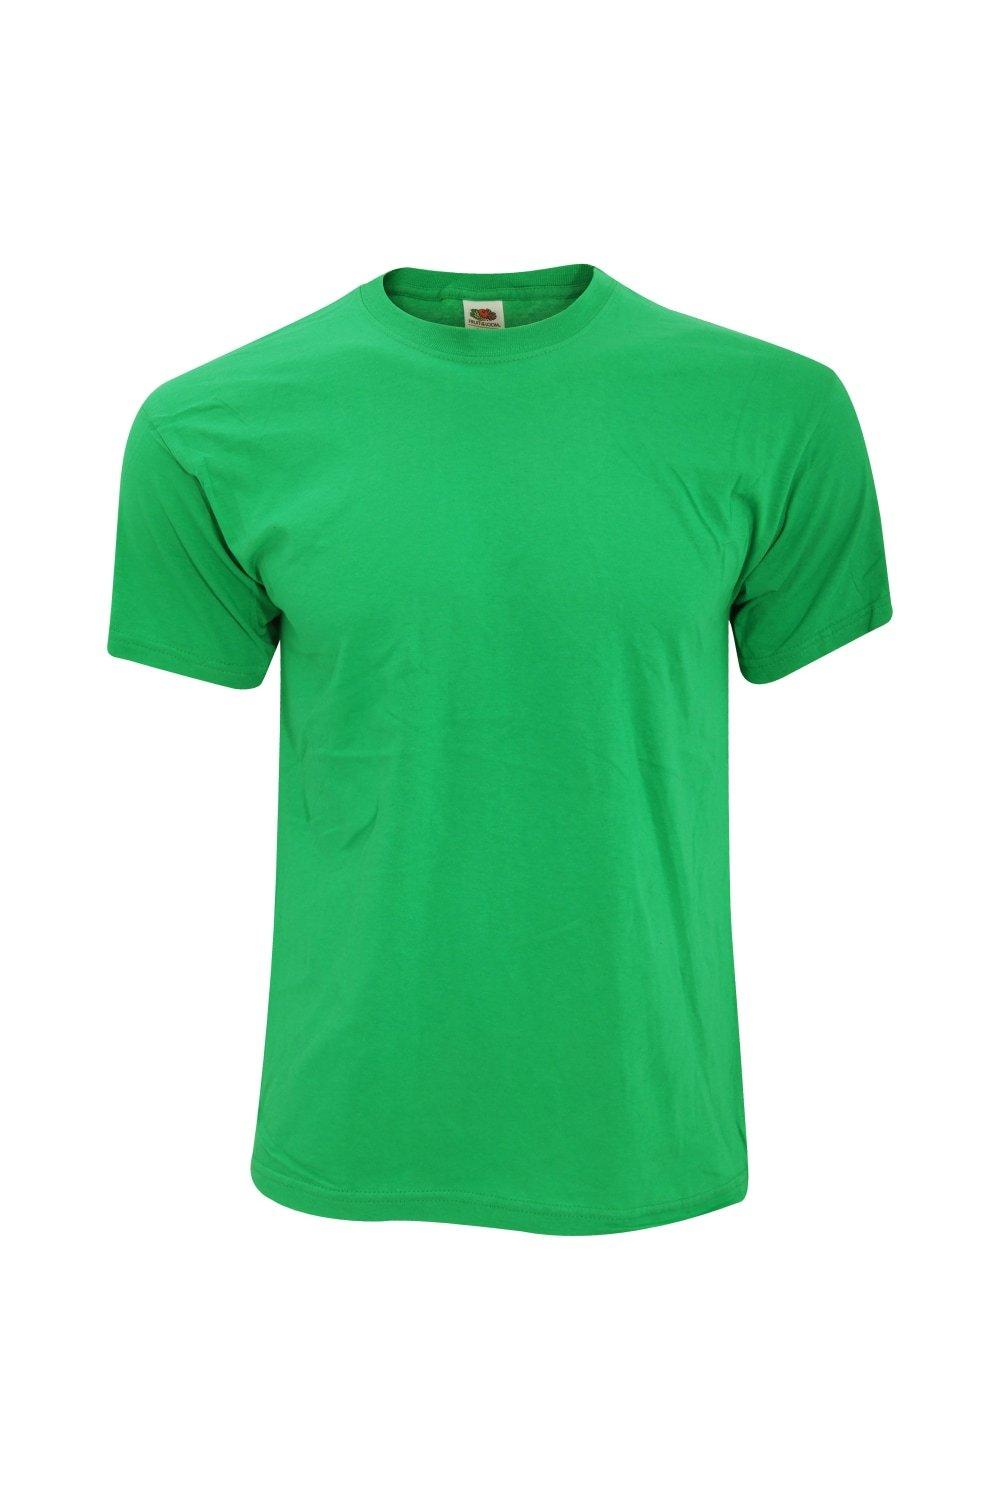 Оригинальная полноразмерная футболка Screen Stars с короткими рукавами Fruit of the Loom, зеленый